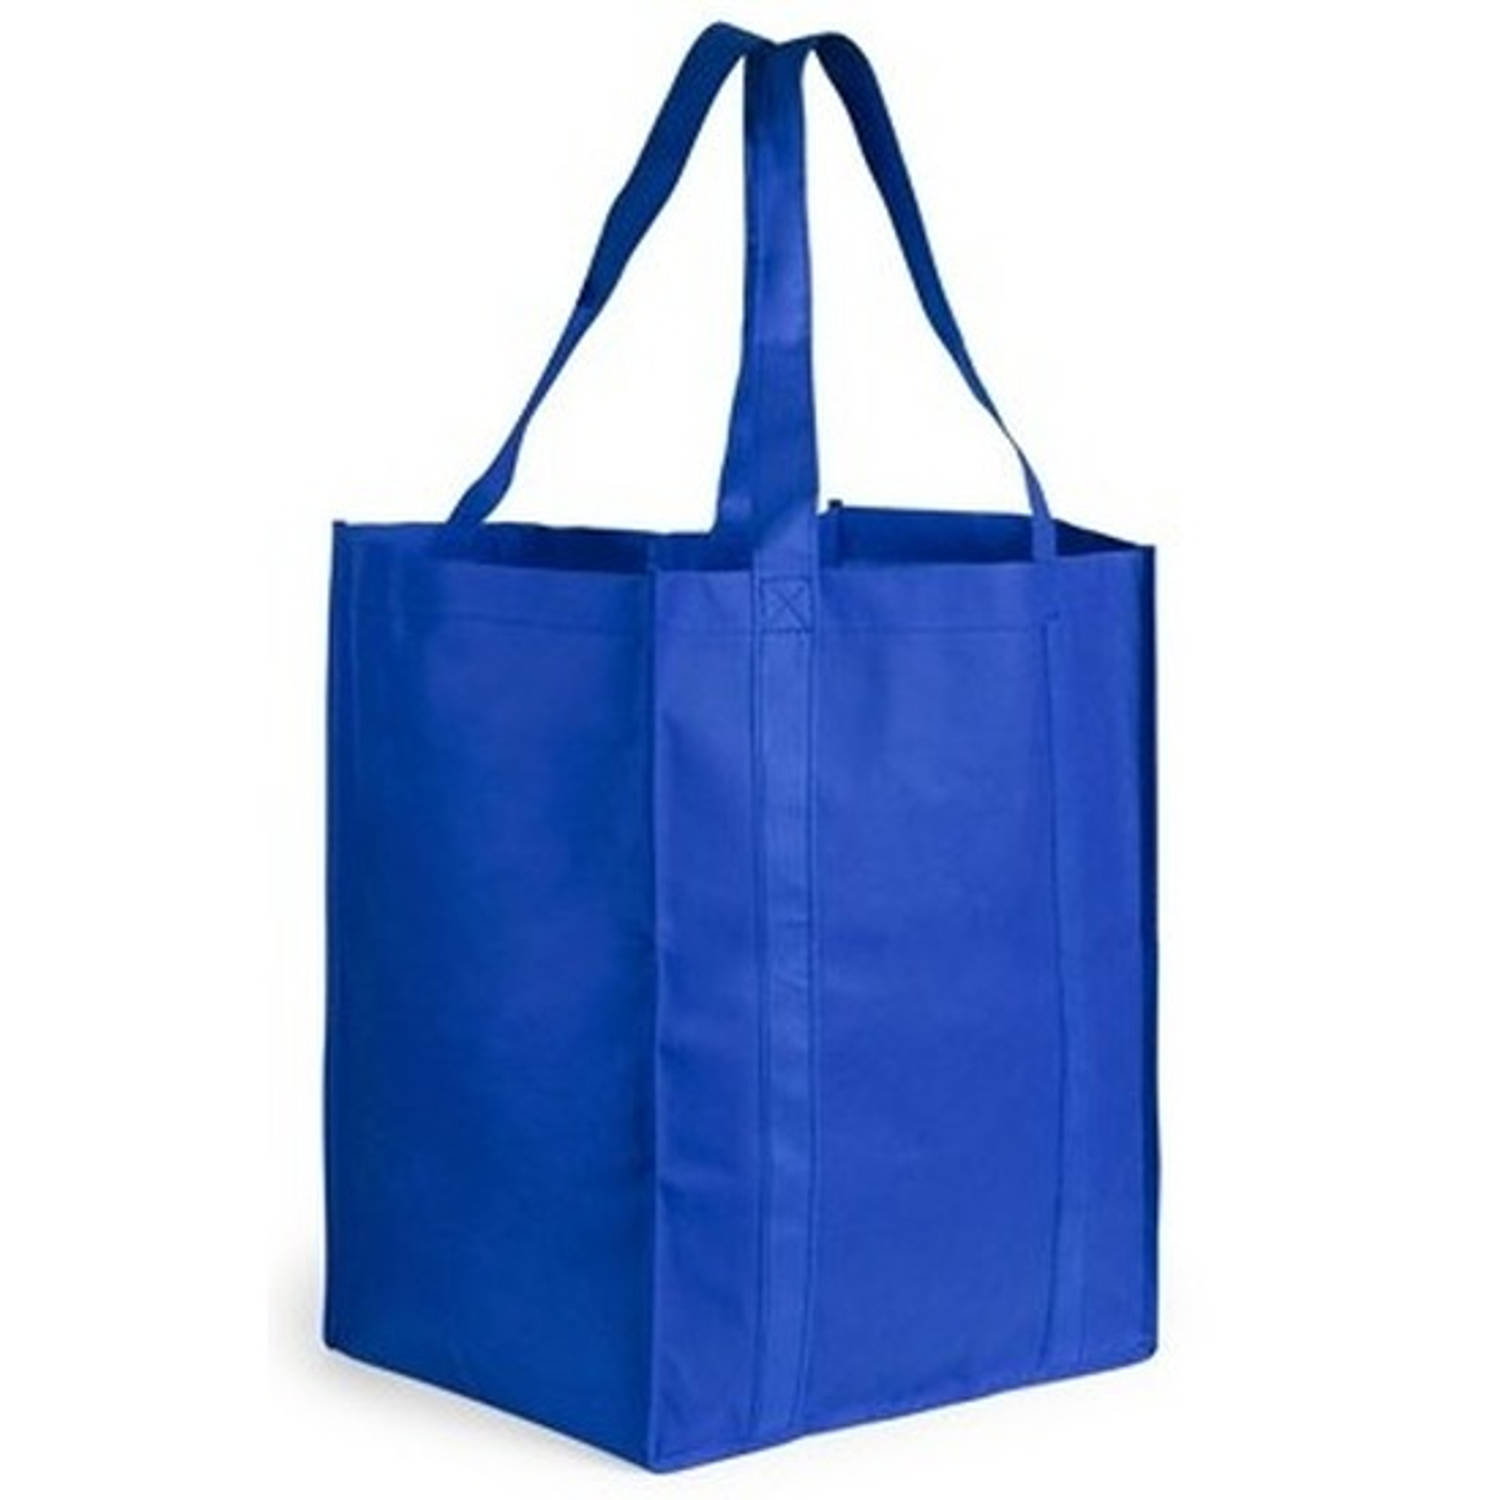 Aas Naar de waarheid Wafel Boodschappen tas/shopper blauw 38 cm - Boodschappentassen | Blokker